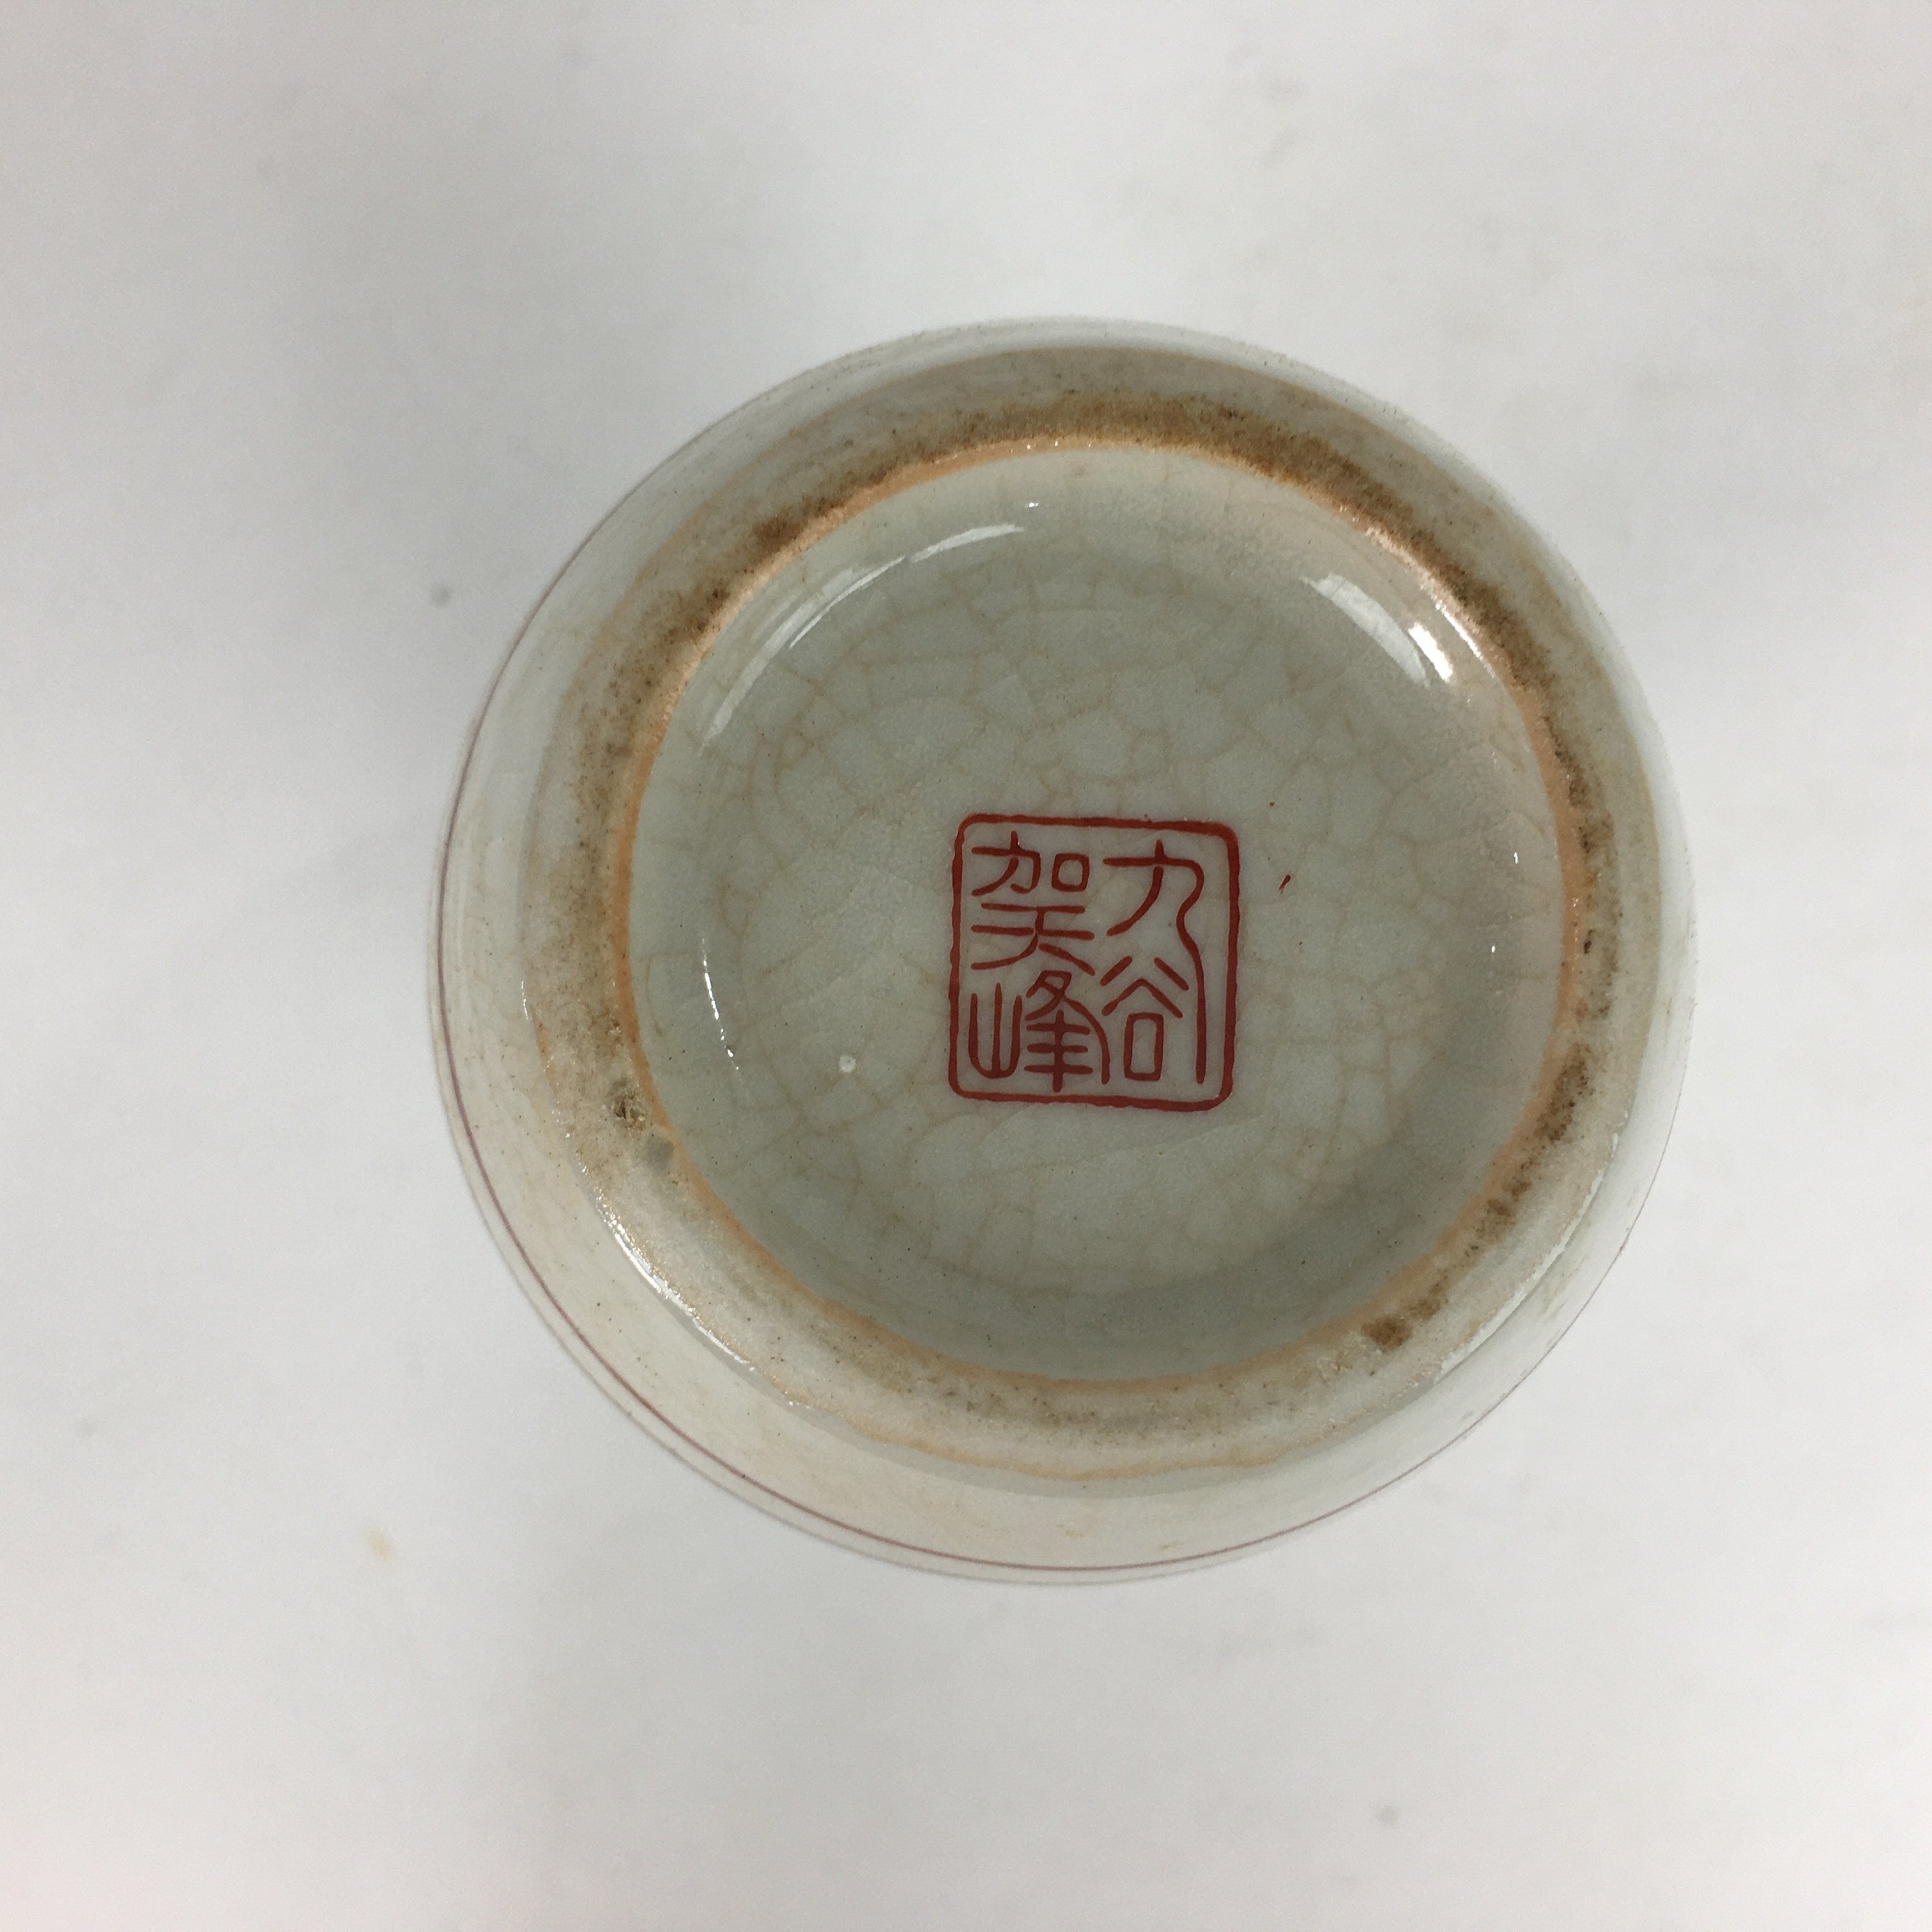 Japanese Ceramic Kutani ware Sake Bottle Tokkuri Vtg Pottery Flower Bird Design